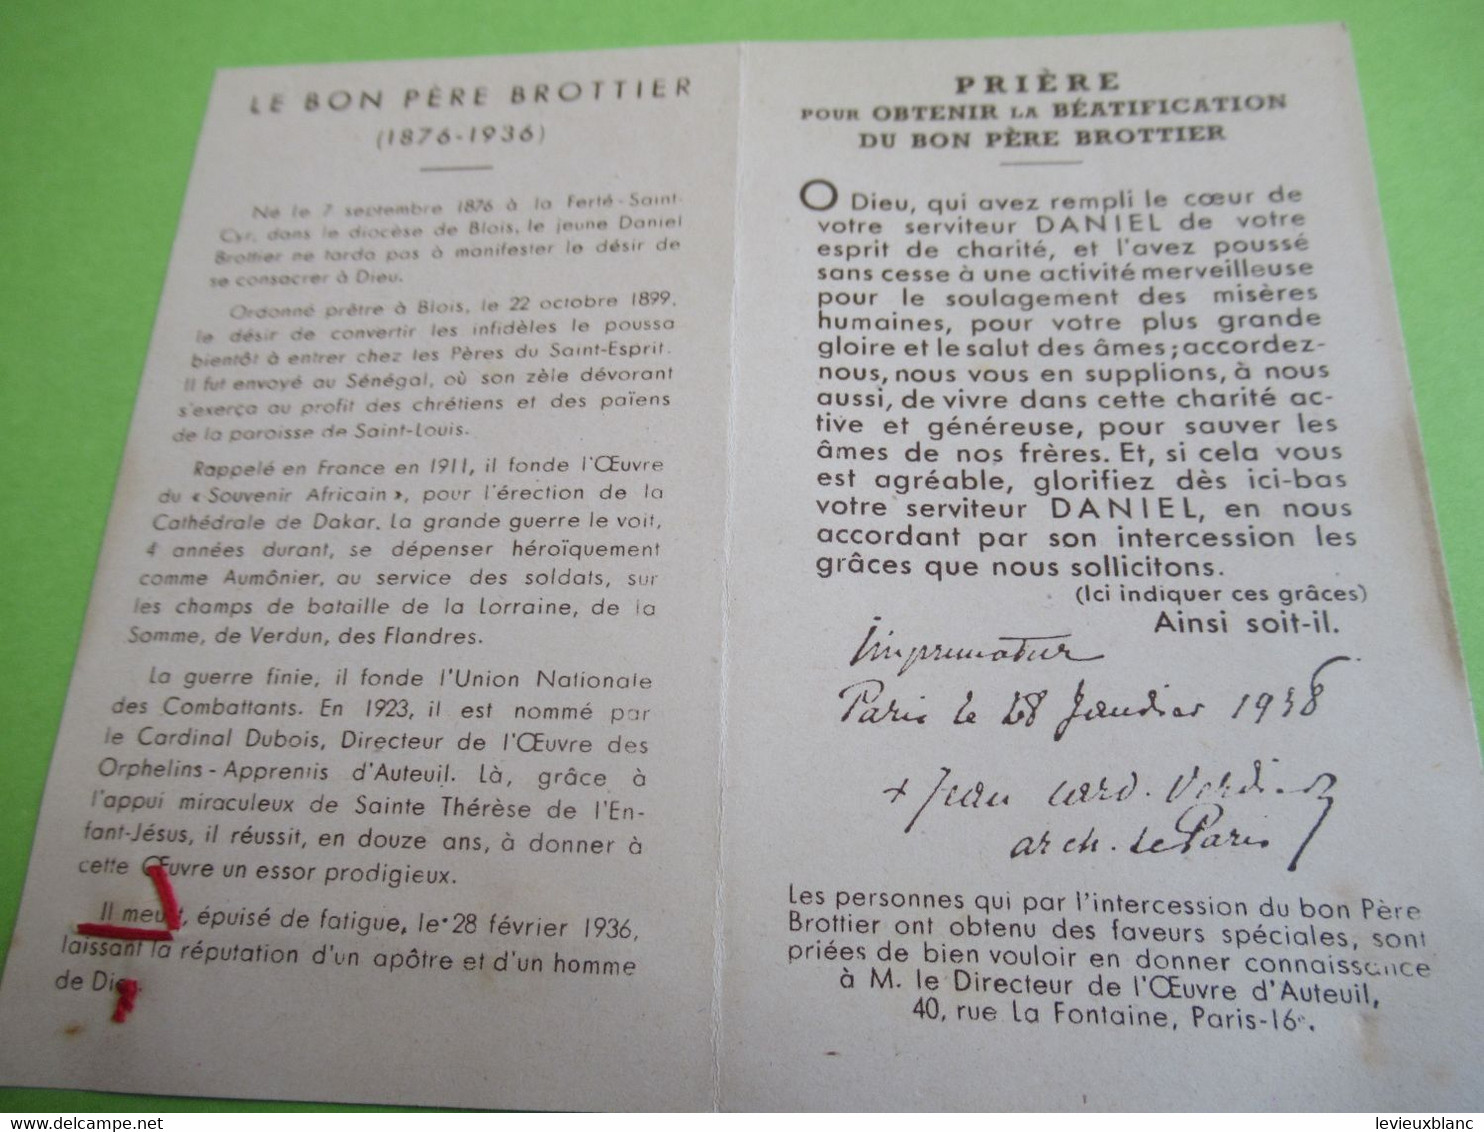 Image Pieuse Ancienne/Le Pére Daniet Brottier/Etoffe Ayant Touché/Cardinal Verdier Archevêque De Paris/1938   IMP106bis - Religion & Esotericism